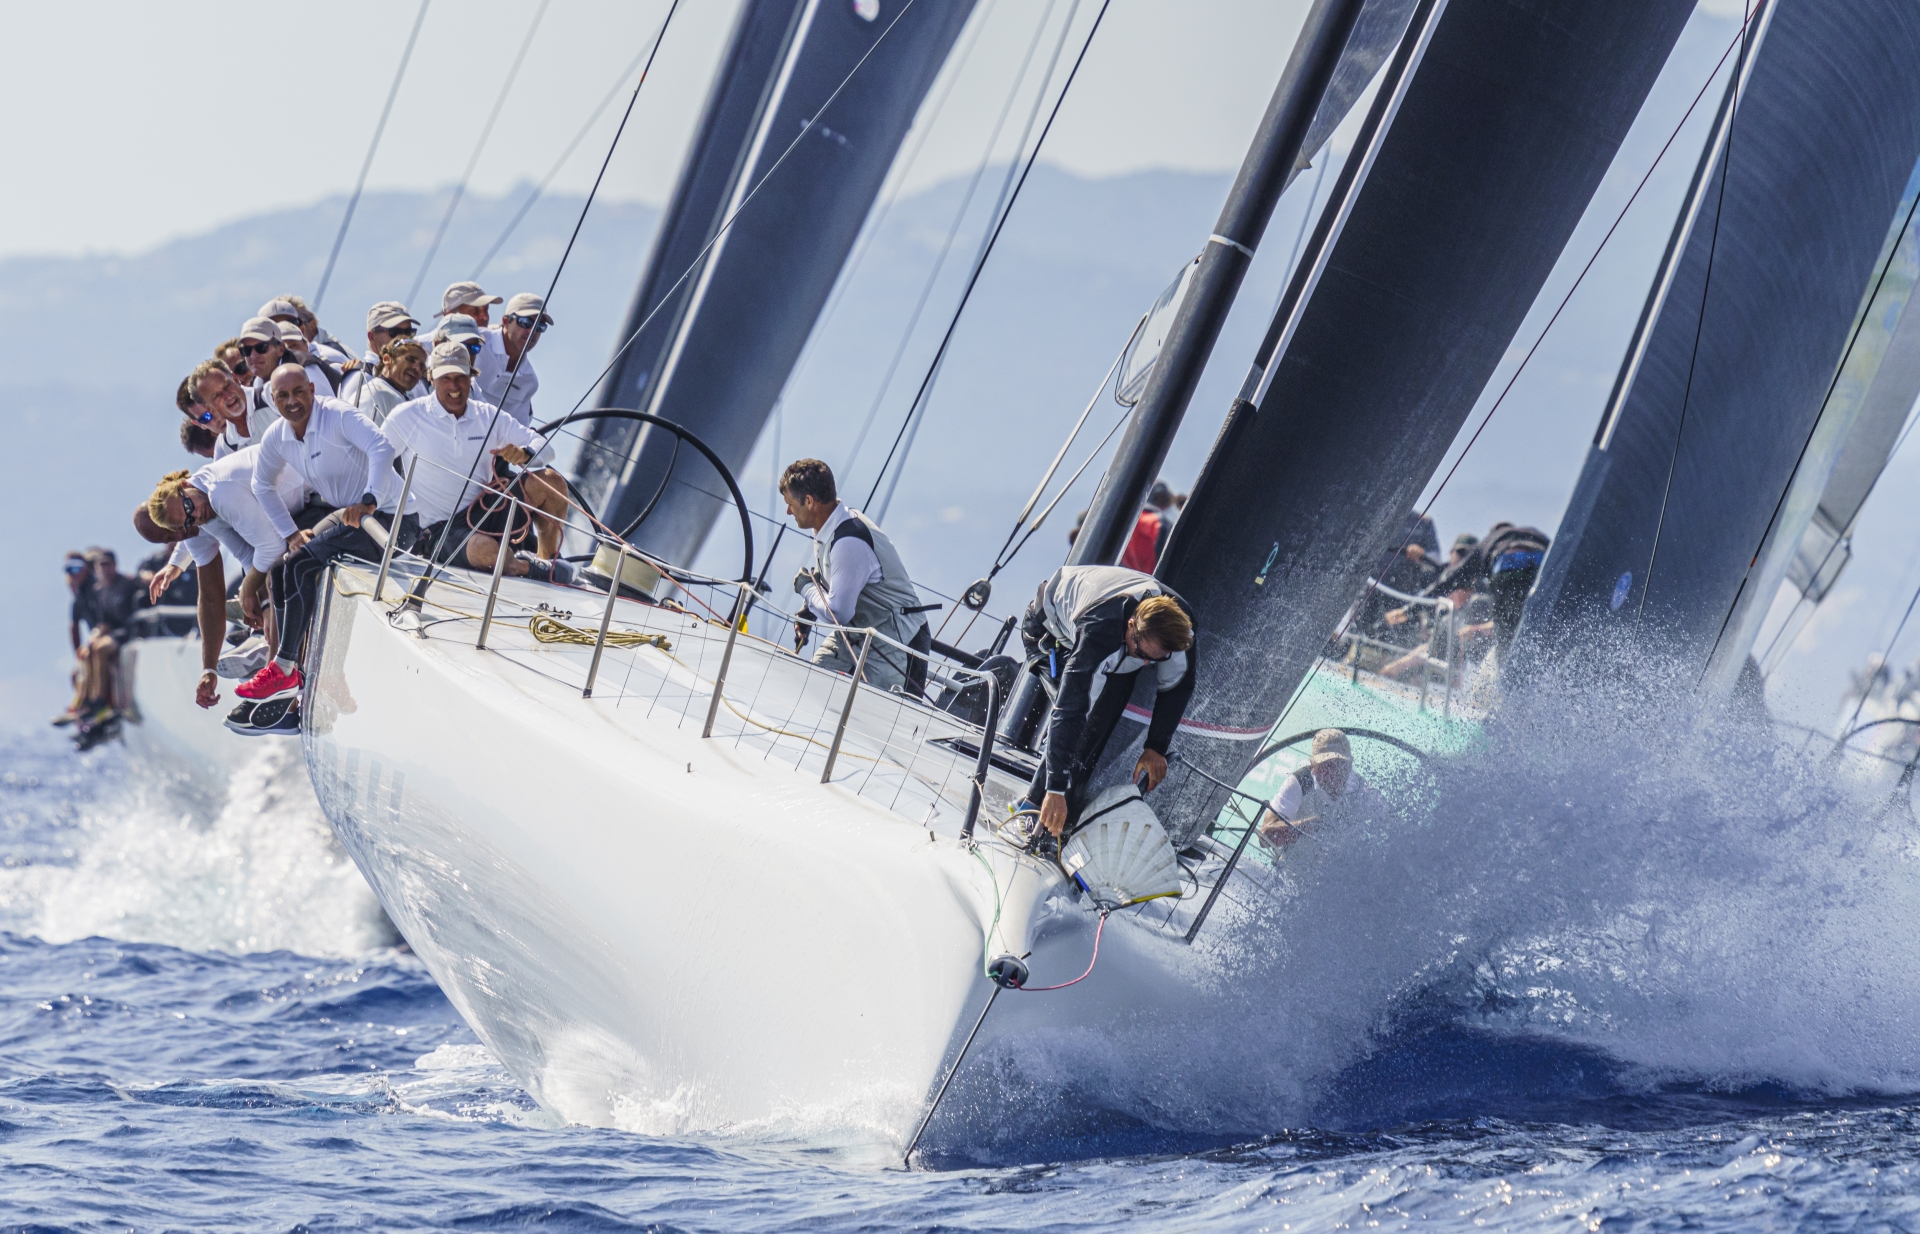 Alla sailing community da parte del Team Cannonball - News - Yacht Club Costa Smeralda